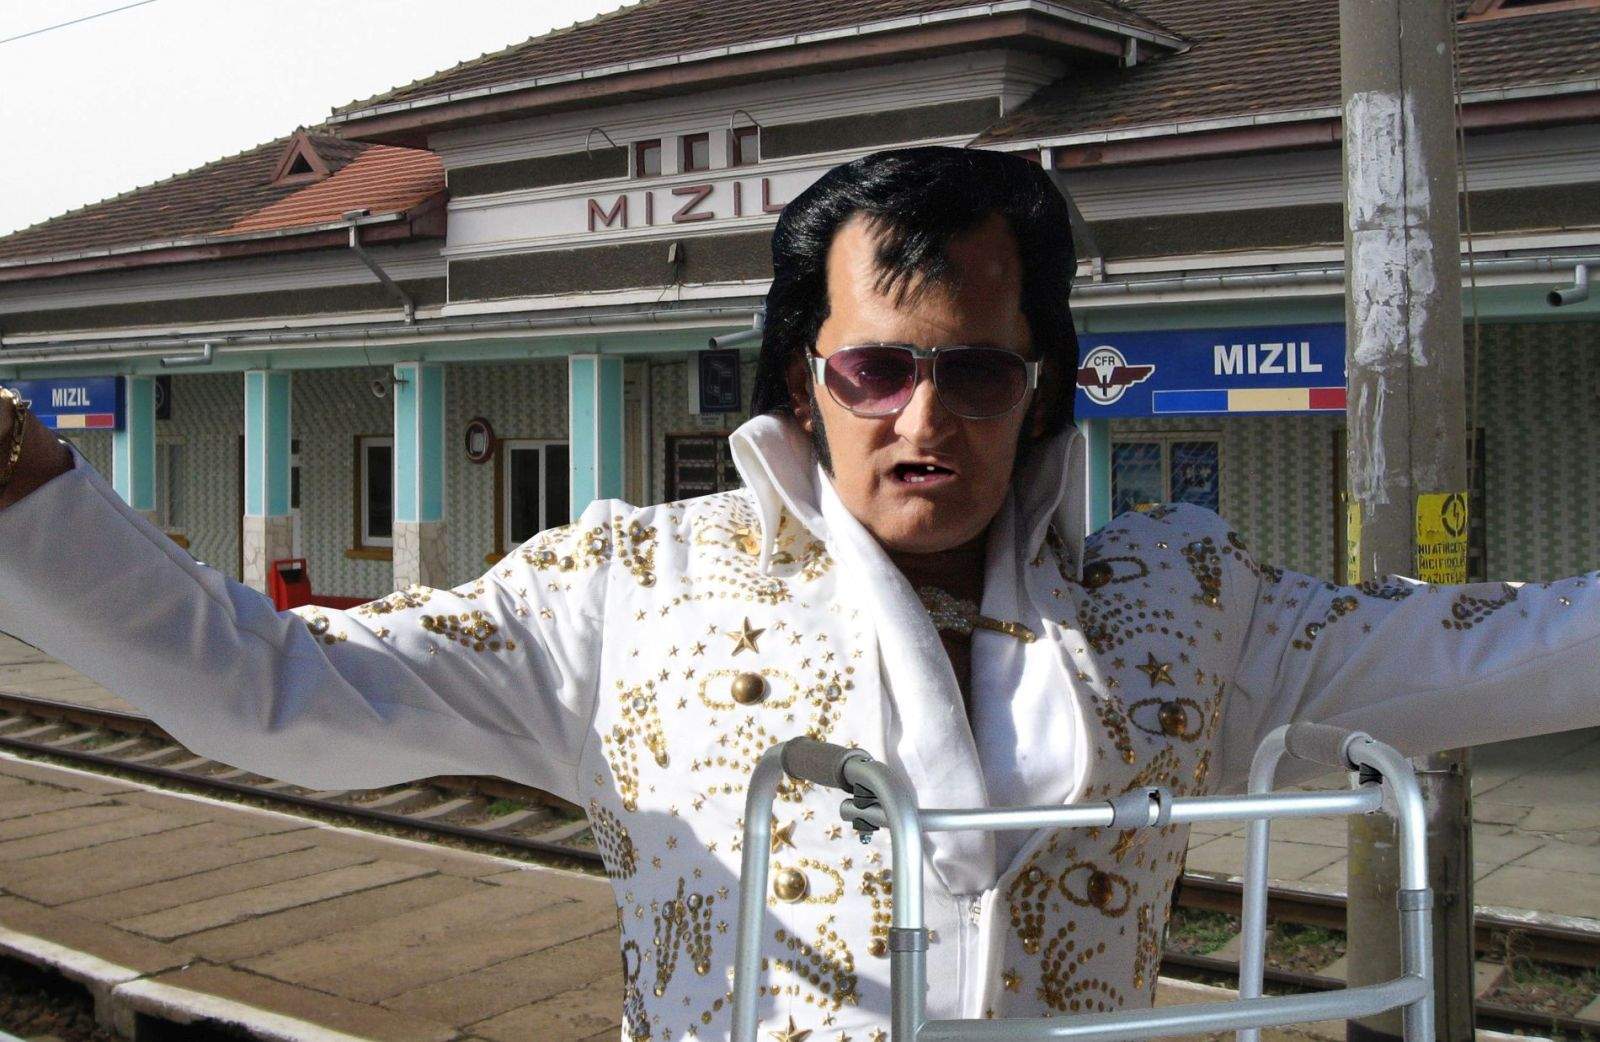 Trist! Elvis Presley a ajuns atât de sărac încât a trebuit să se mute din Cuba în Mizil